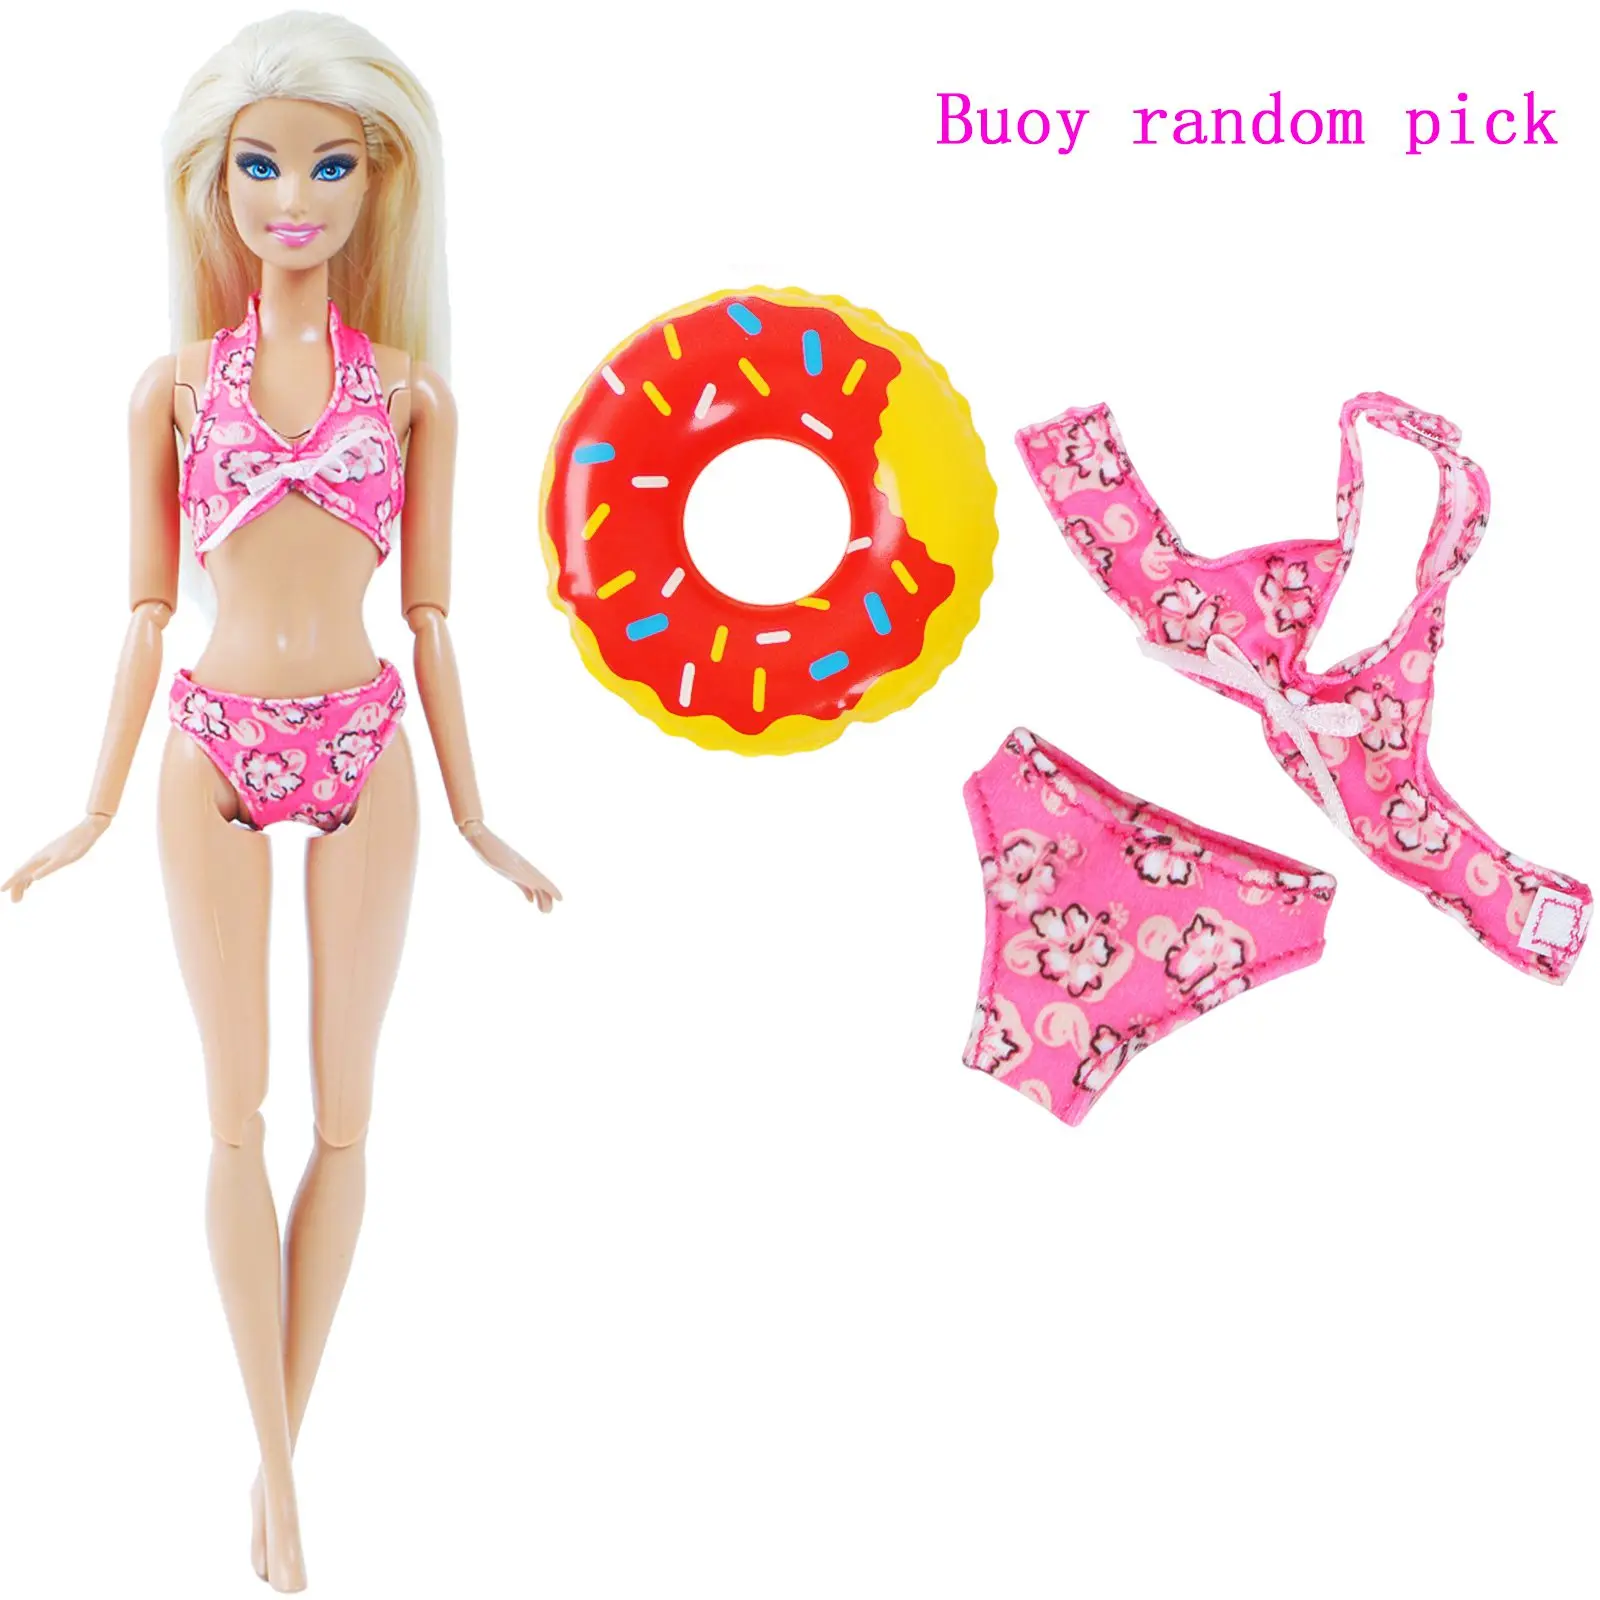 1x купальники для кукол пляжная одежда для купания прекрасный Купальник бикини+ случайный 1x плавательный круг спасательный пояс кольцо для куклы Барби девочка игрушка